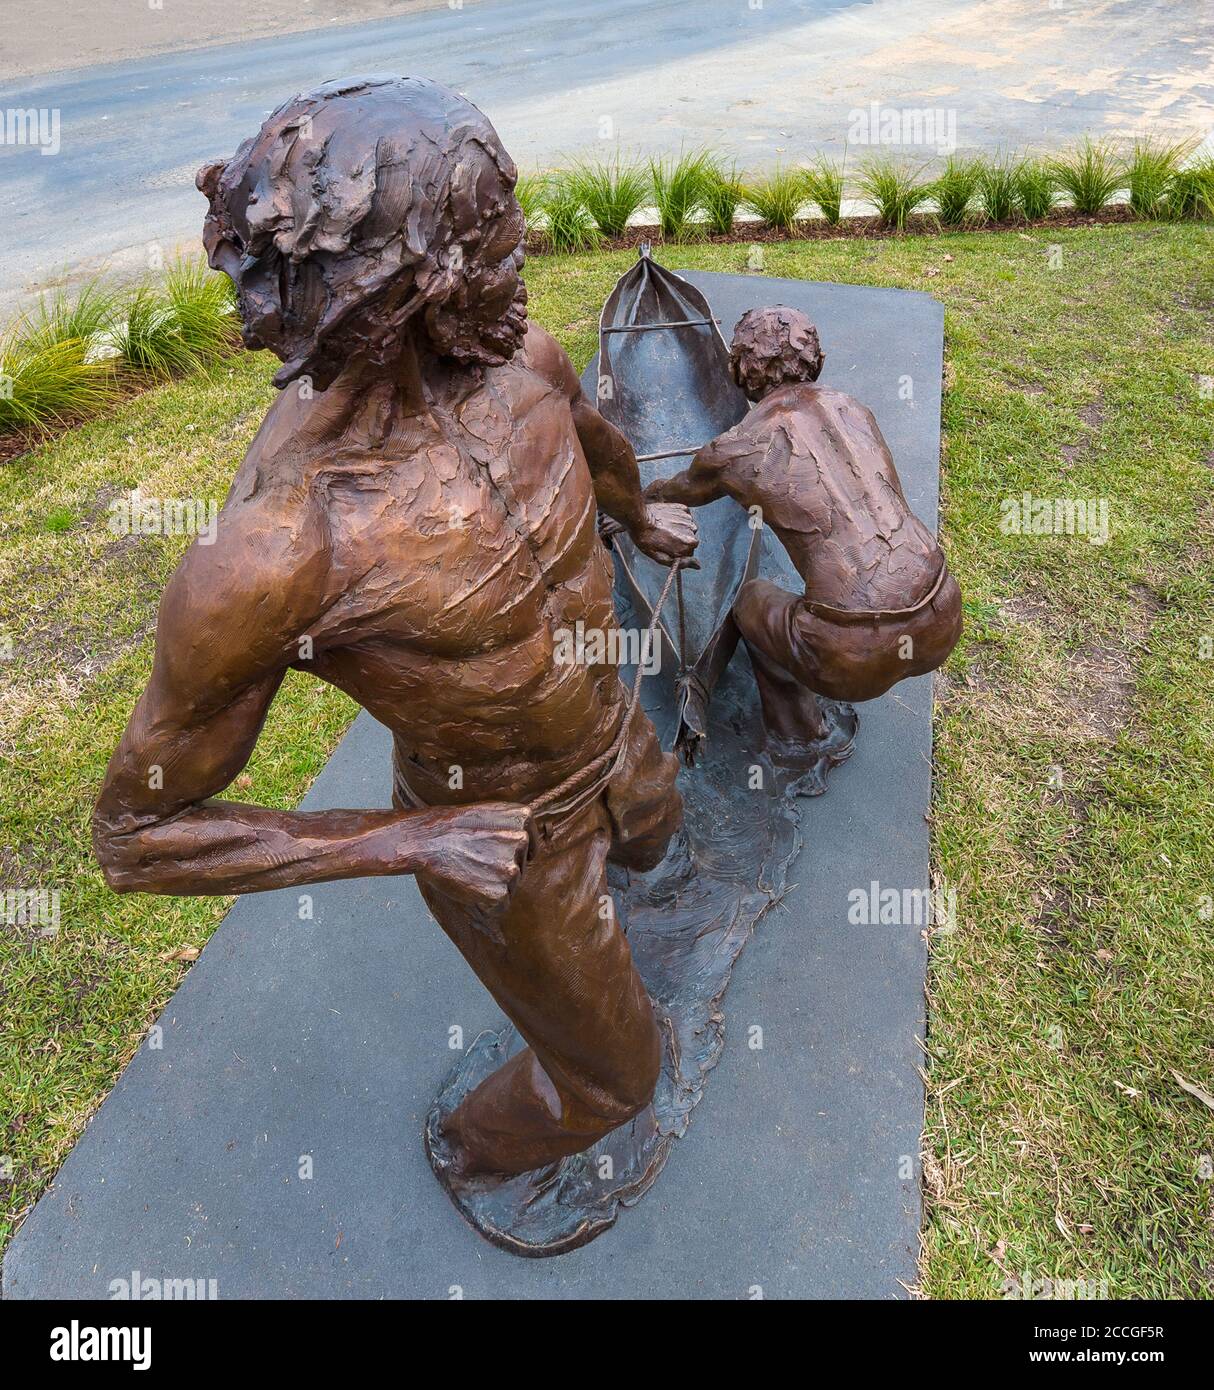 Statue di bronzo di due eroi indigeni ritraggono una canoa con corteccia durante le inondazioni del 1852 nel NSW Australia, dove hanno salvato 68 persone. Foto Stock